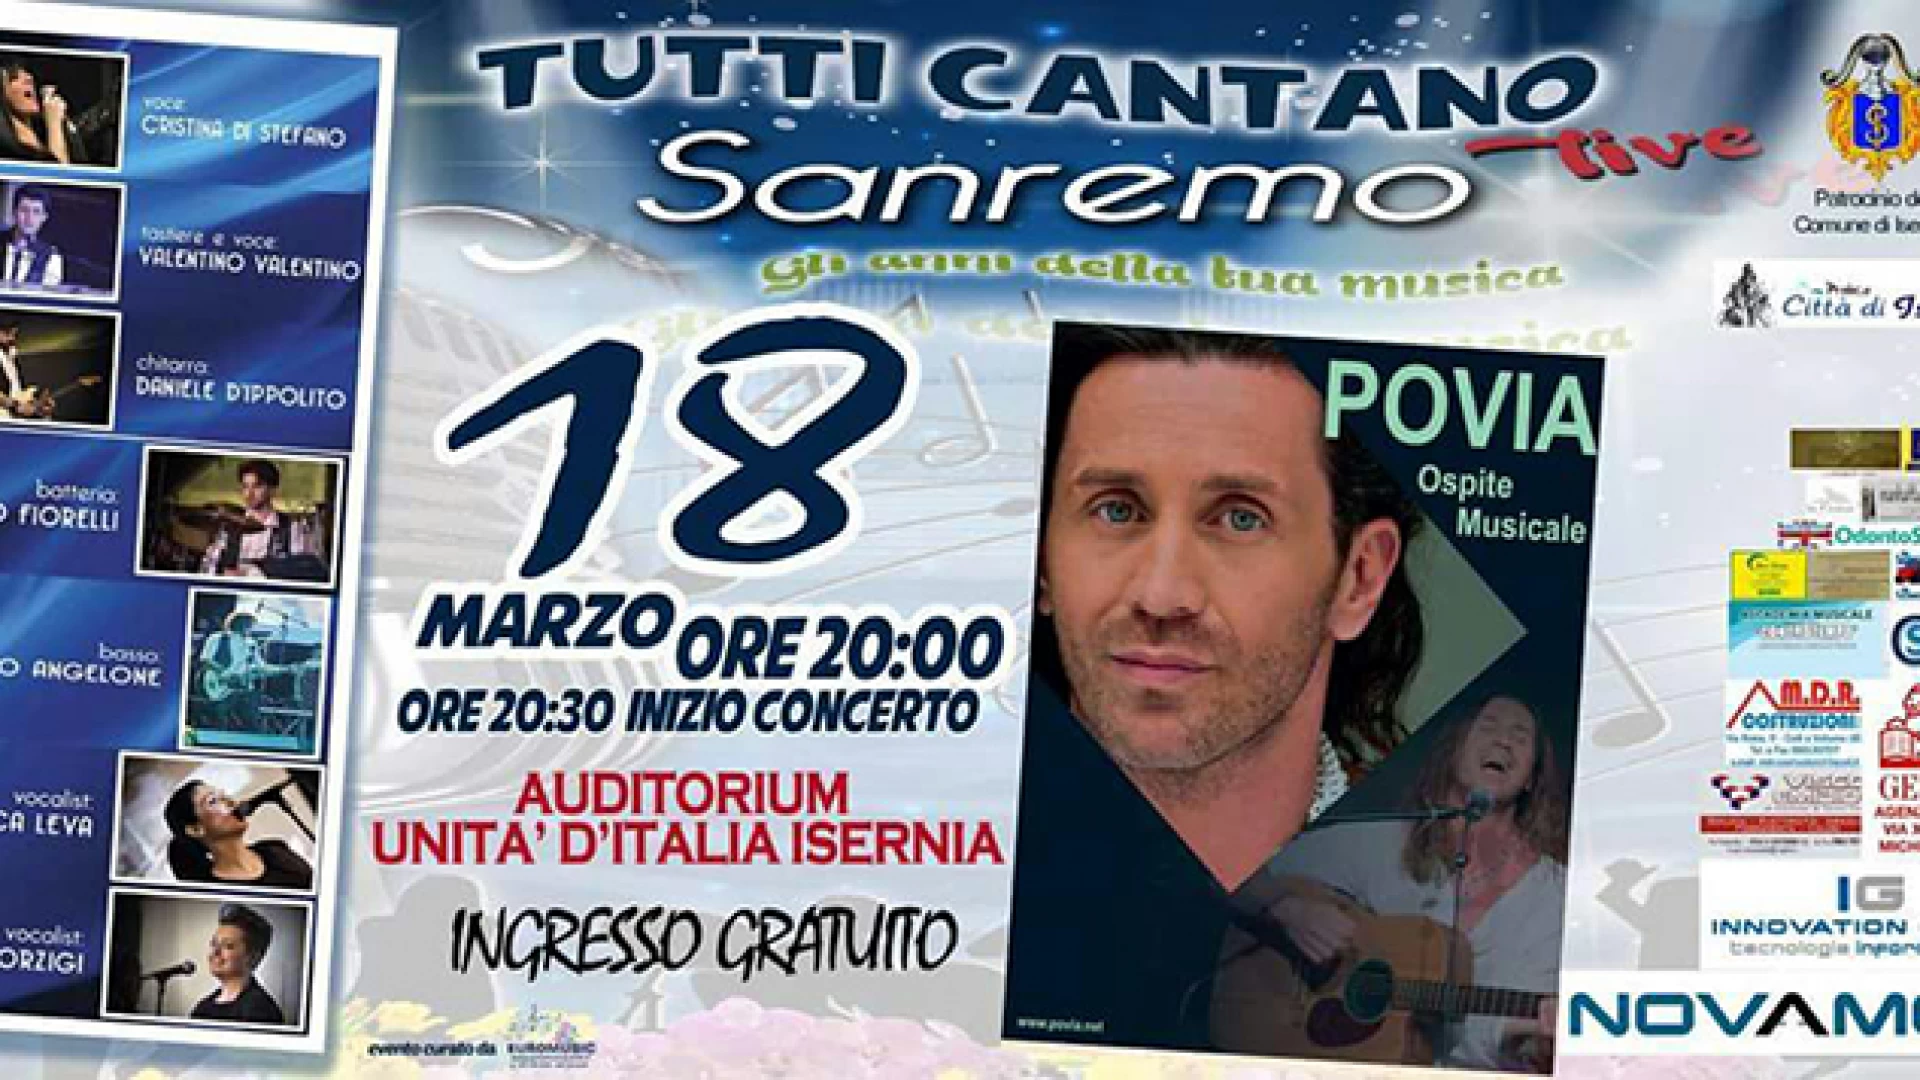 Isernia: Tutti Cantano Sanremo live, al via il tour del gruppo musicale molisano. Domenica 18 marzo all’Auditorium Unita’ d’Italia ospite il cantautore Povia.